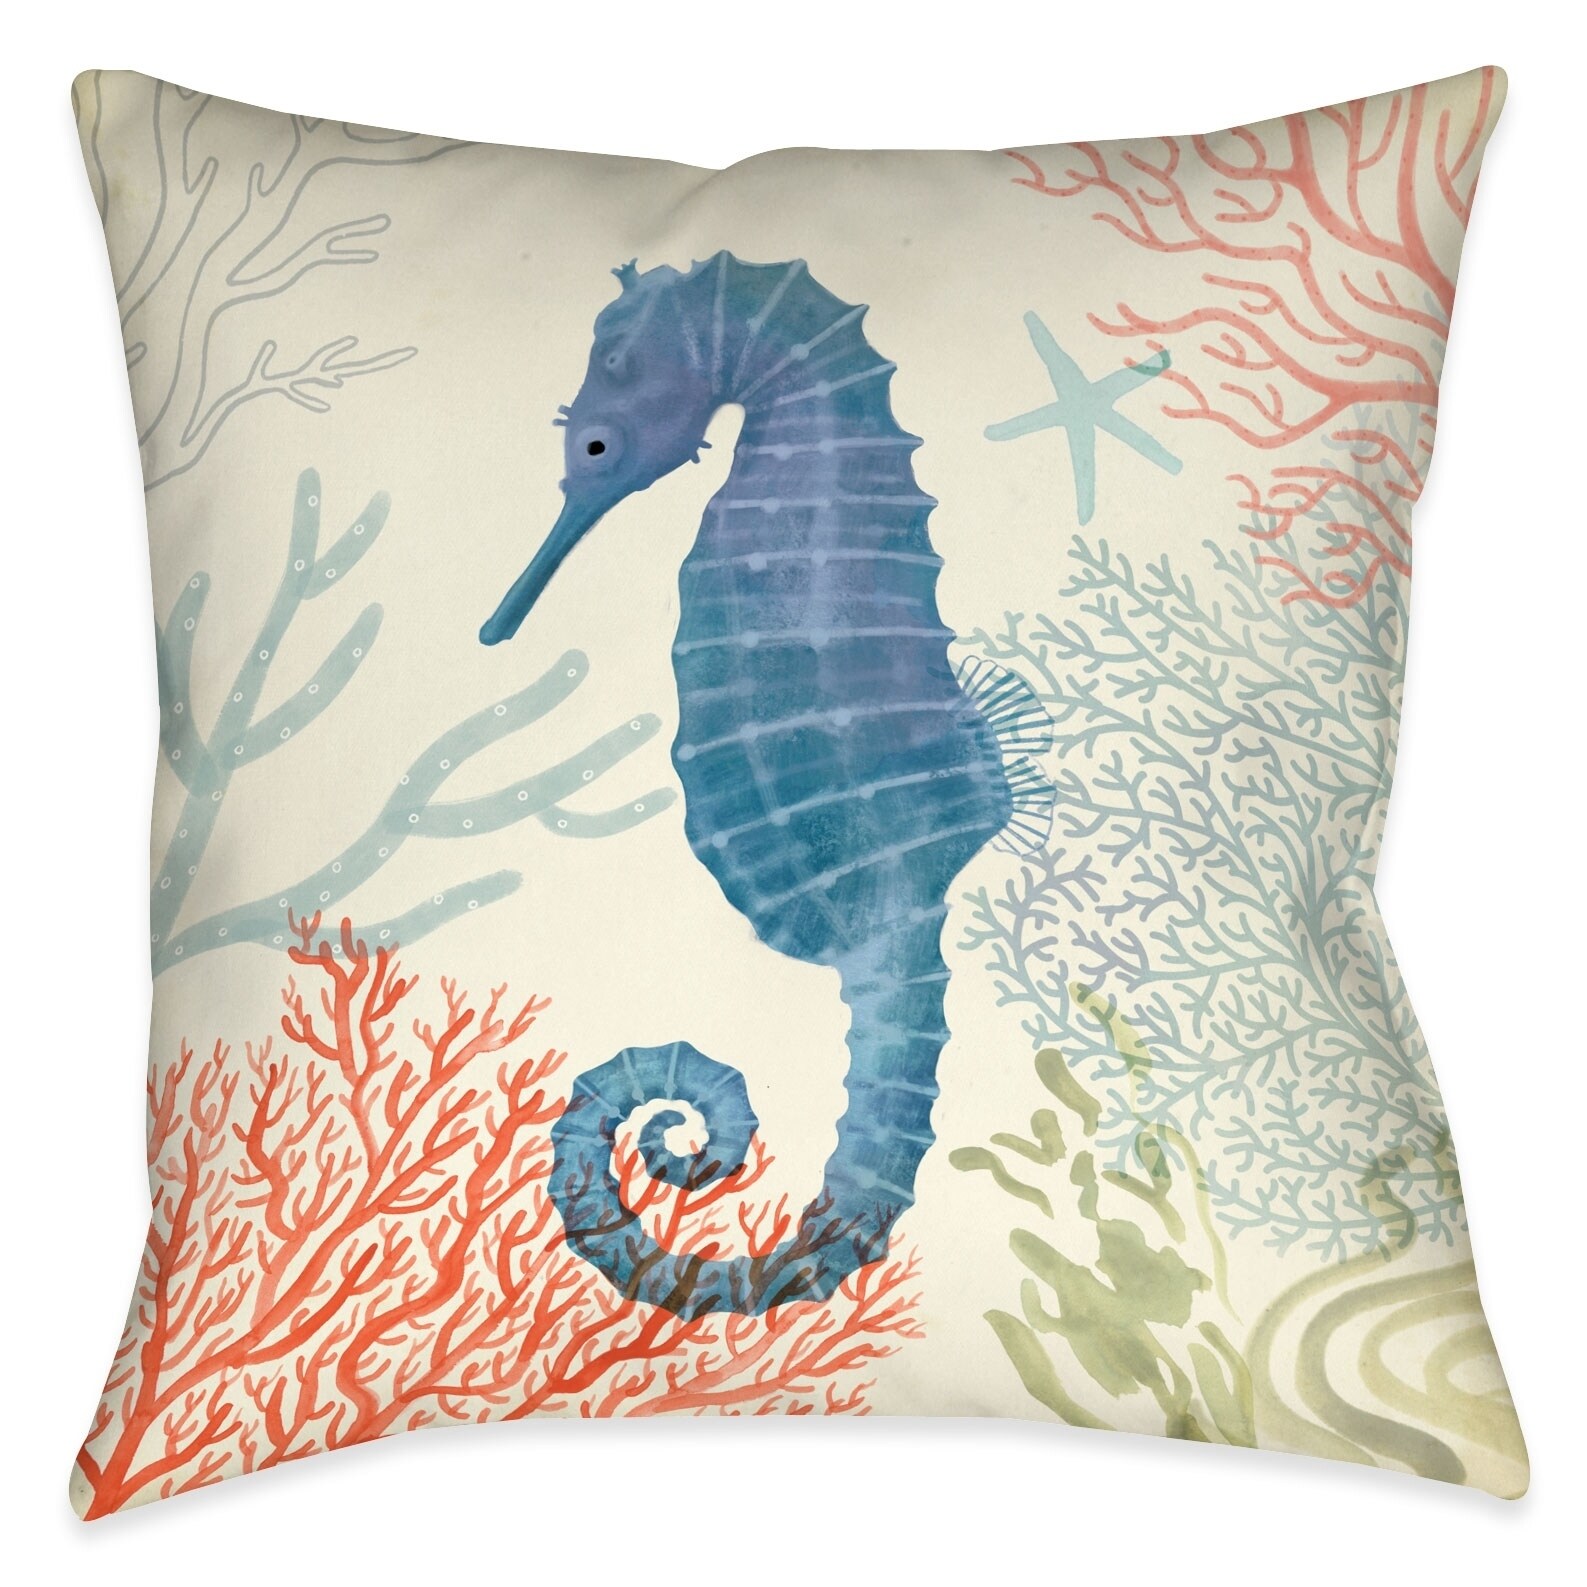 2pcs throws and pillows seahorse marine sealife ocean cushion cover 